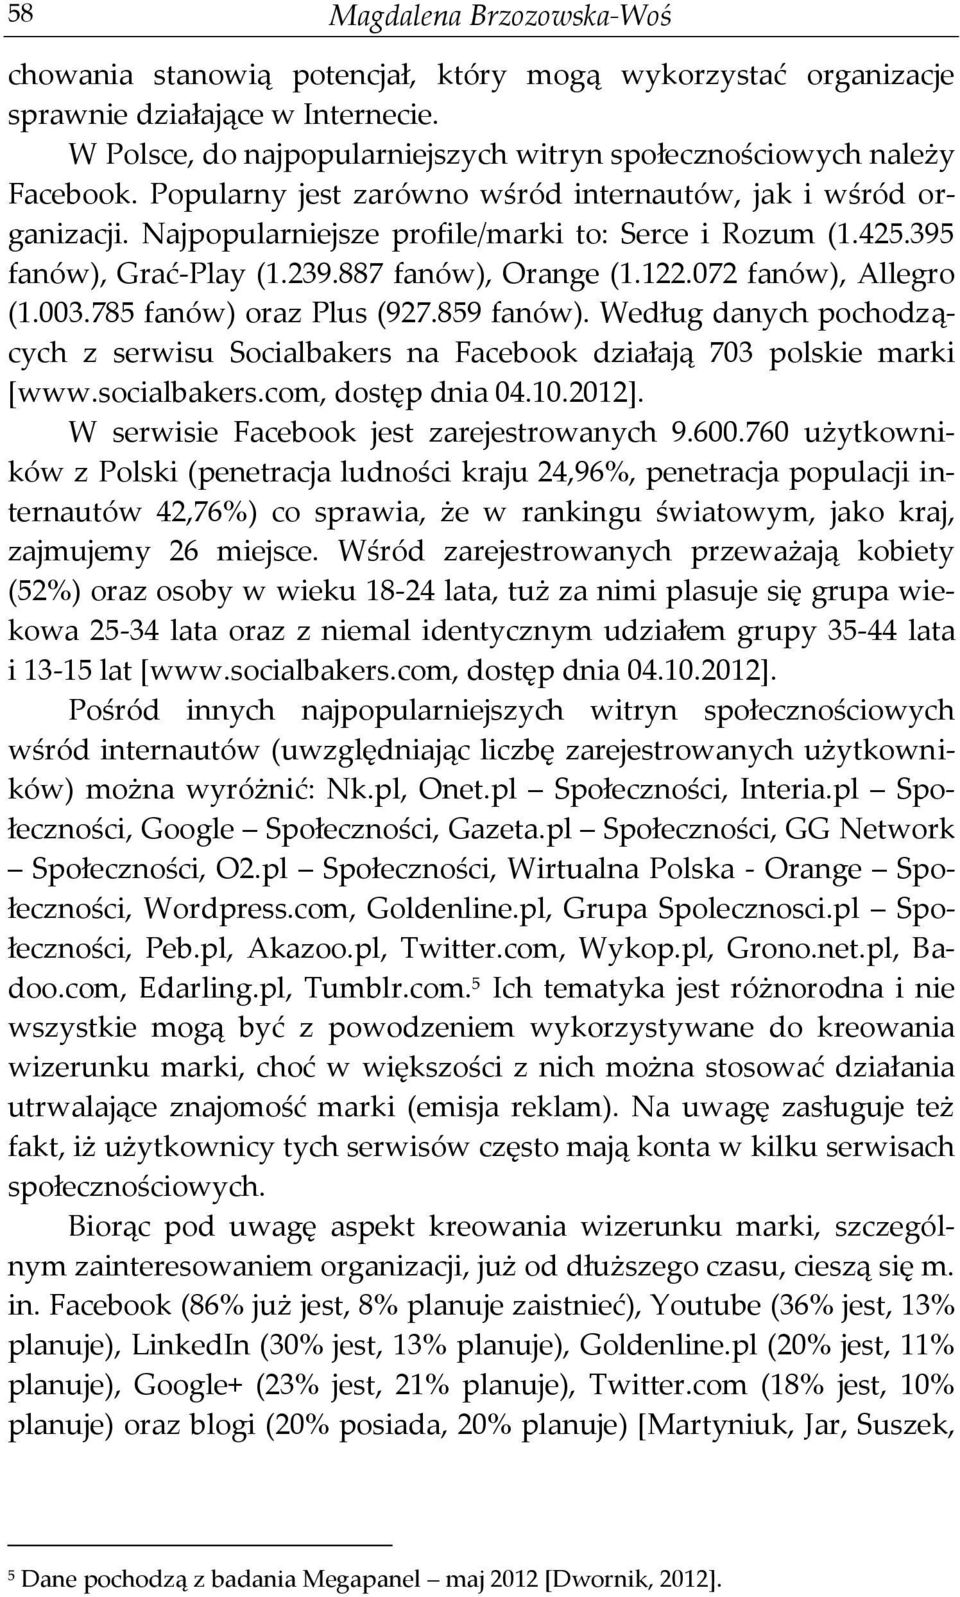 072 fanów), Allegro (1.003.785 fanów) oraz Plus (927.859 fanów). Według danych pochodzących z serwisu Socialbakers na Facebook działają 703 polskie marki [www.socialbakers.com, dostęp dnia 04.10.